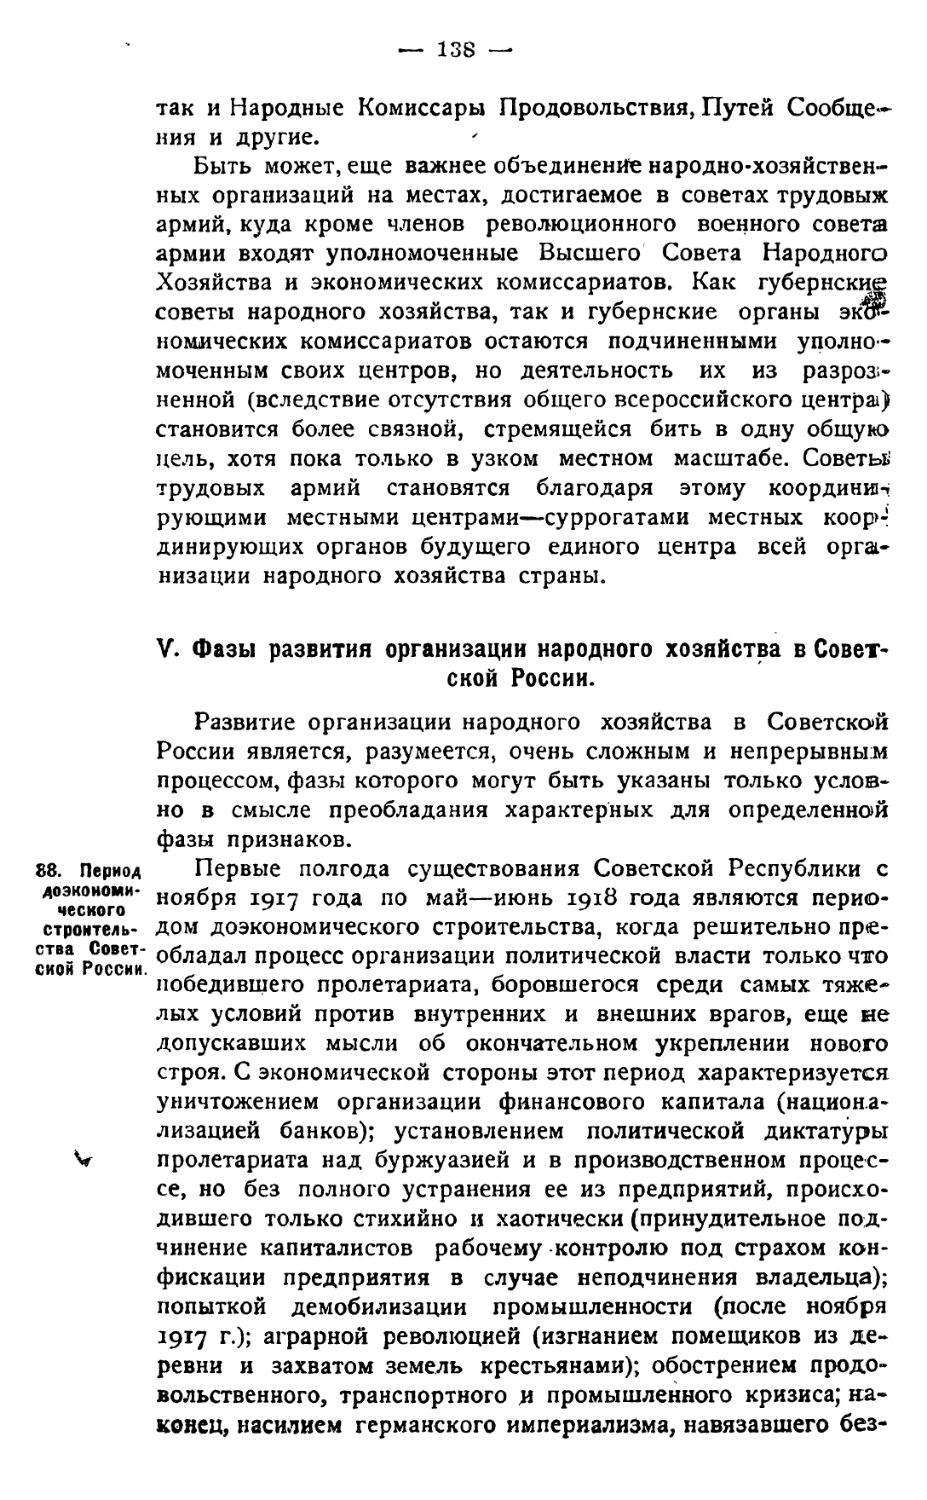 V. Фазы развития организации народного хозяйства в Советской России